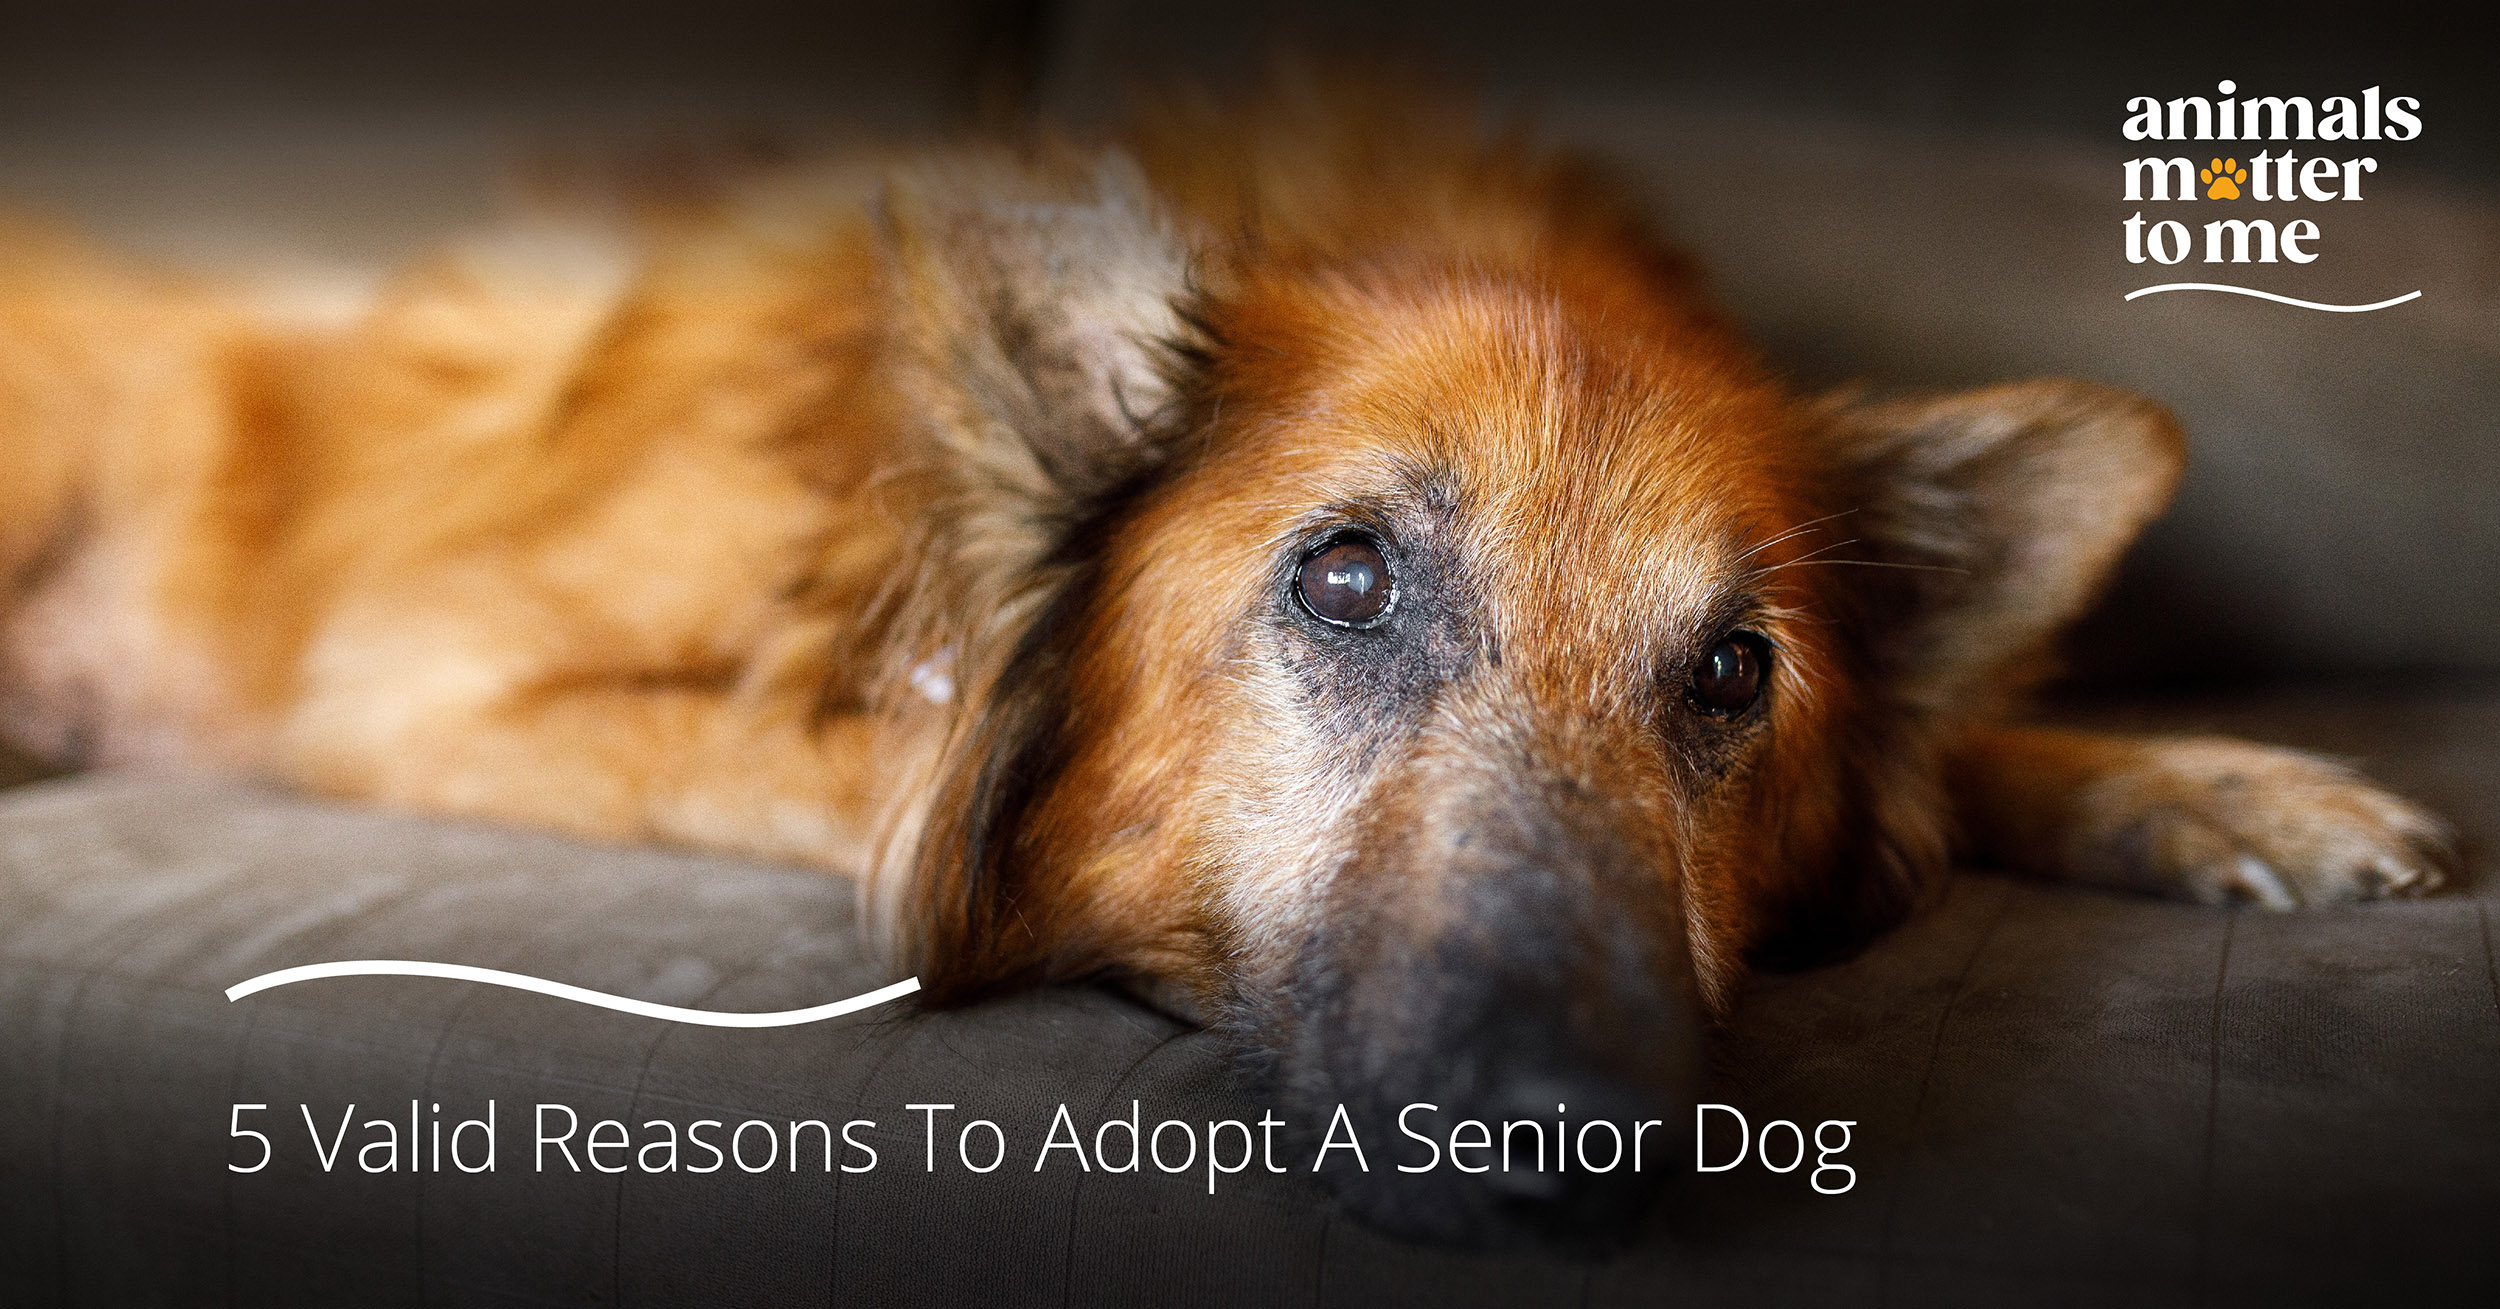 Adopt a senior dog